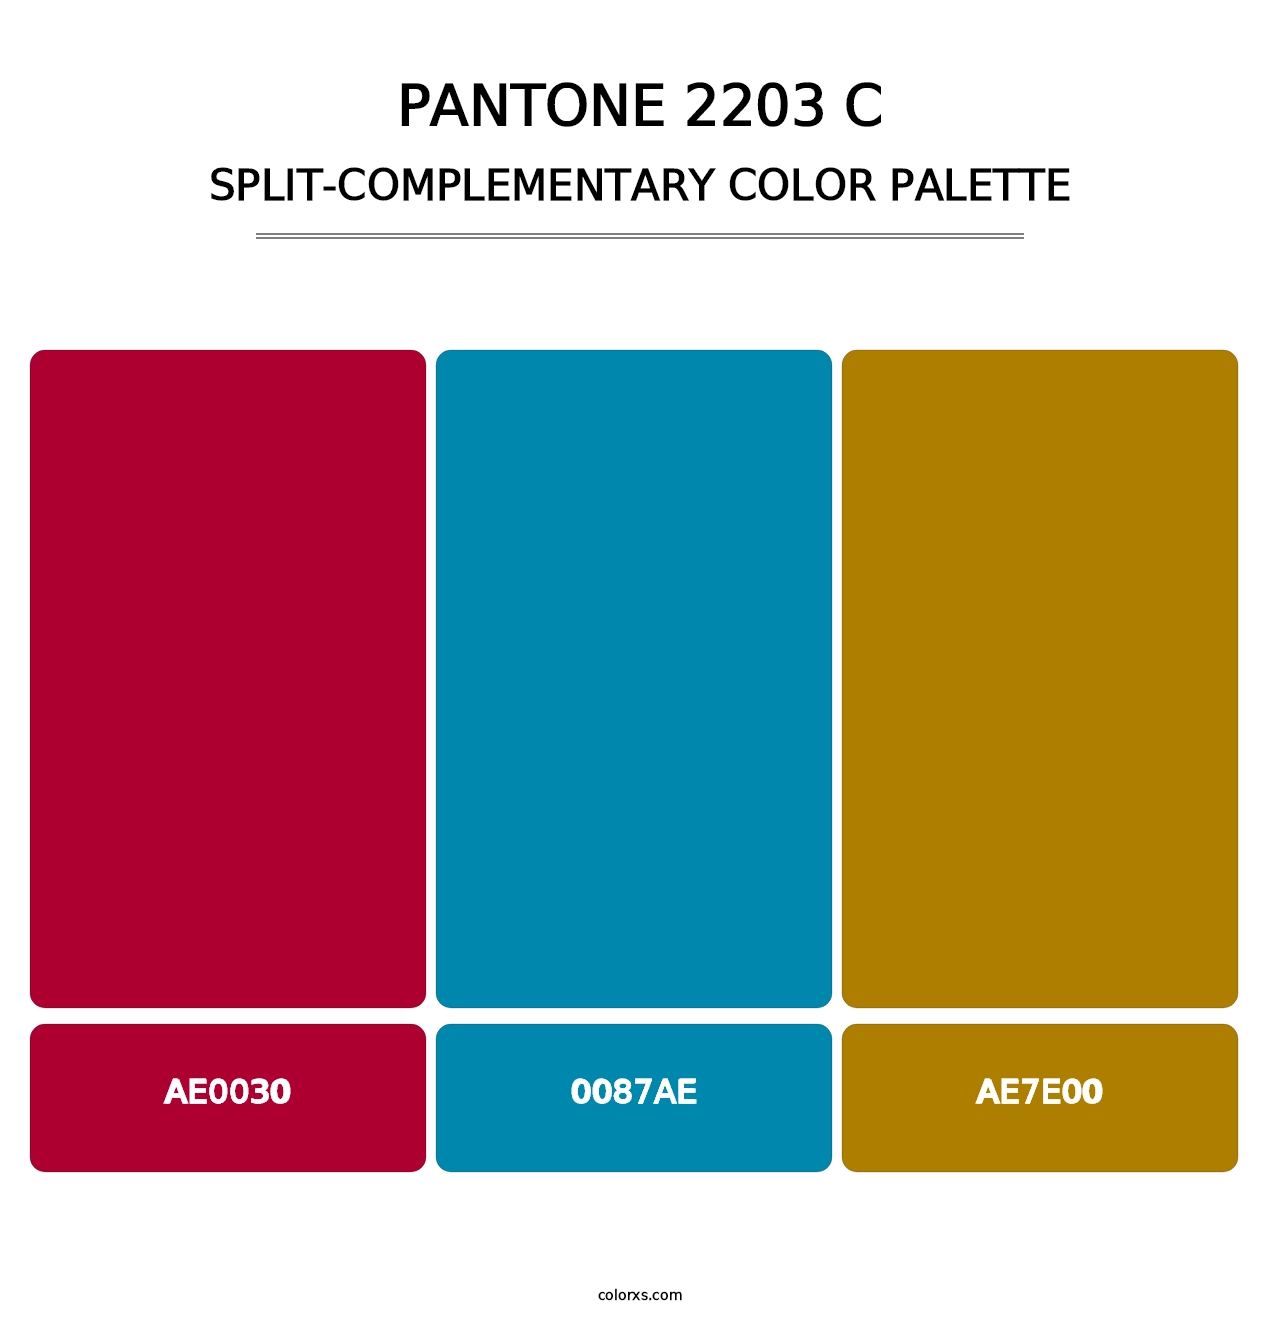 PANTONE 2203 C - Split-Complementary Color Palette